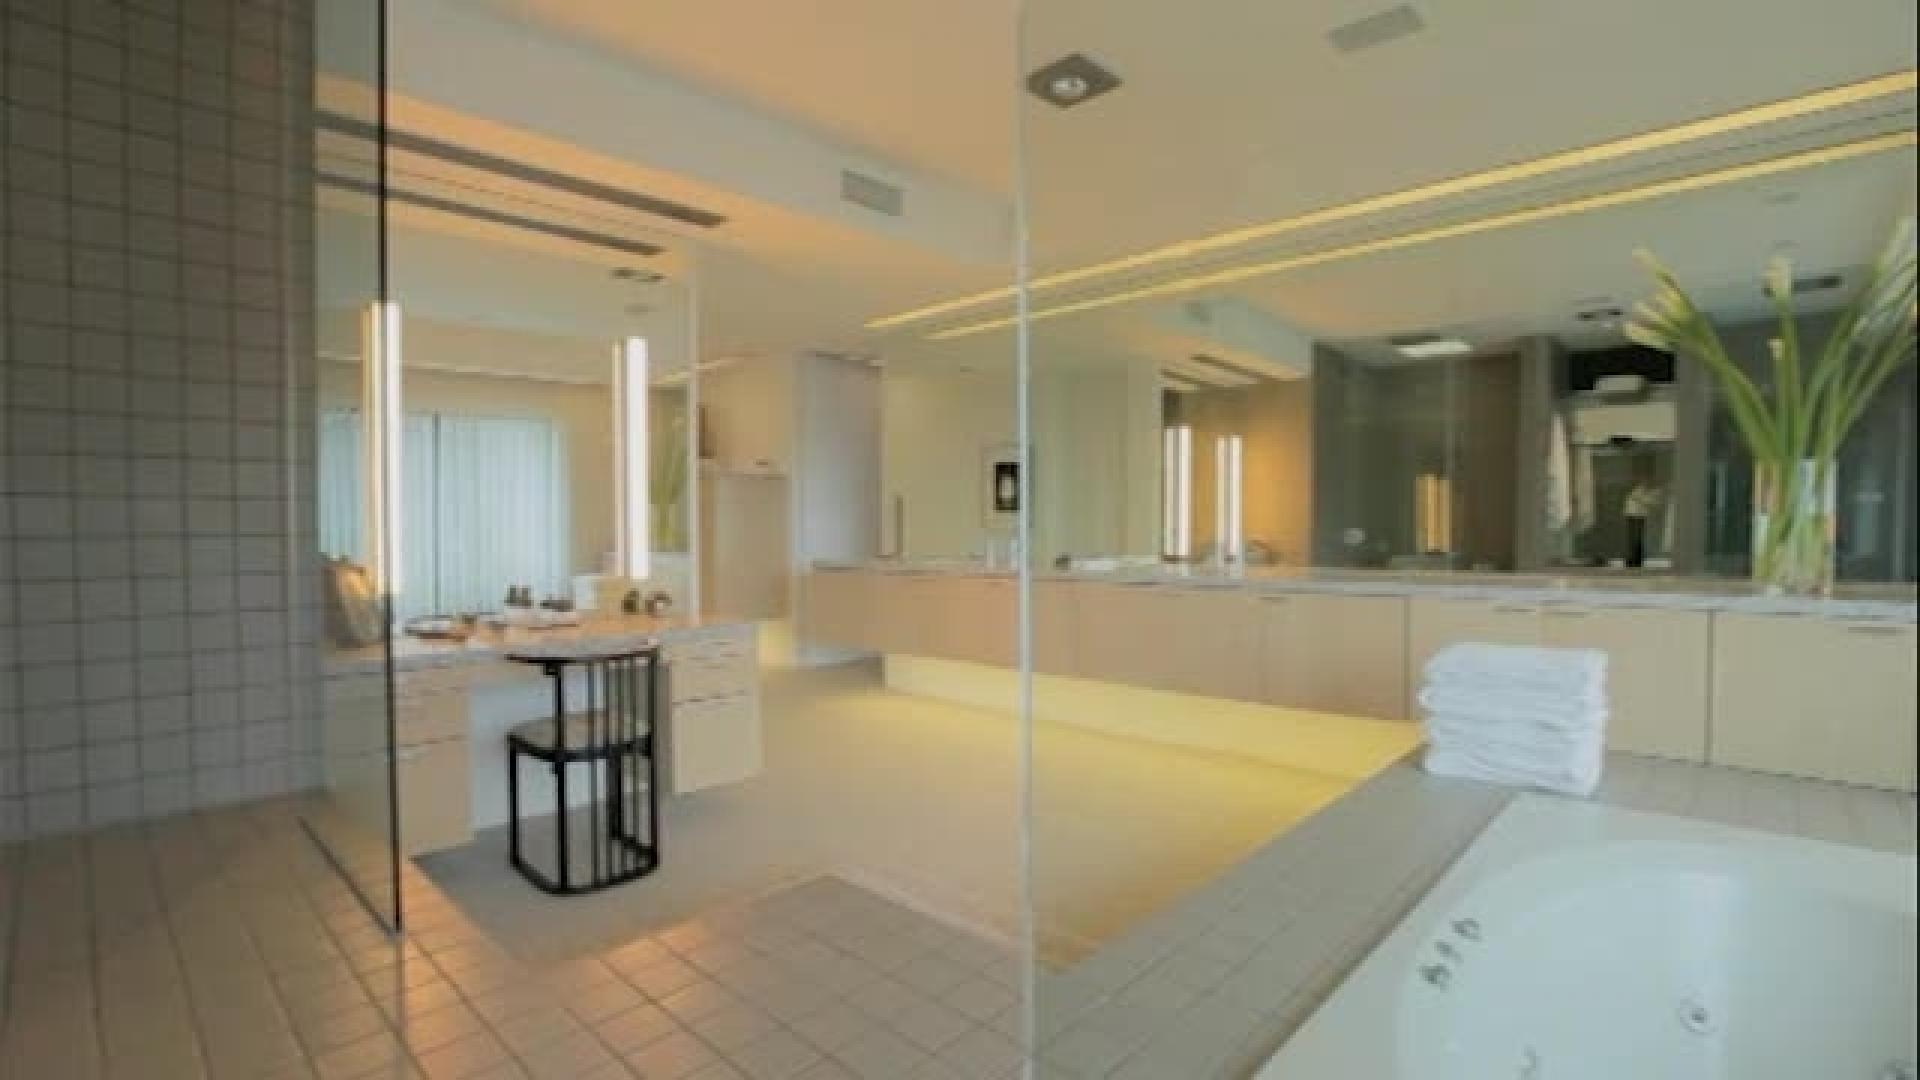 Olisiko tässä sinun unelmien kylpyhuoneesi?